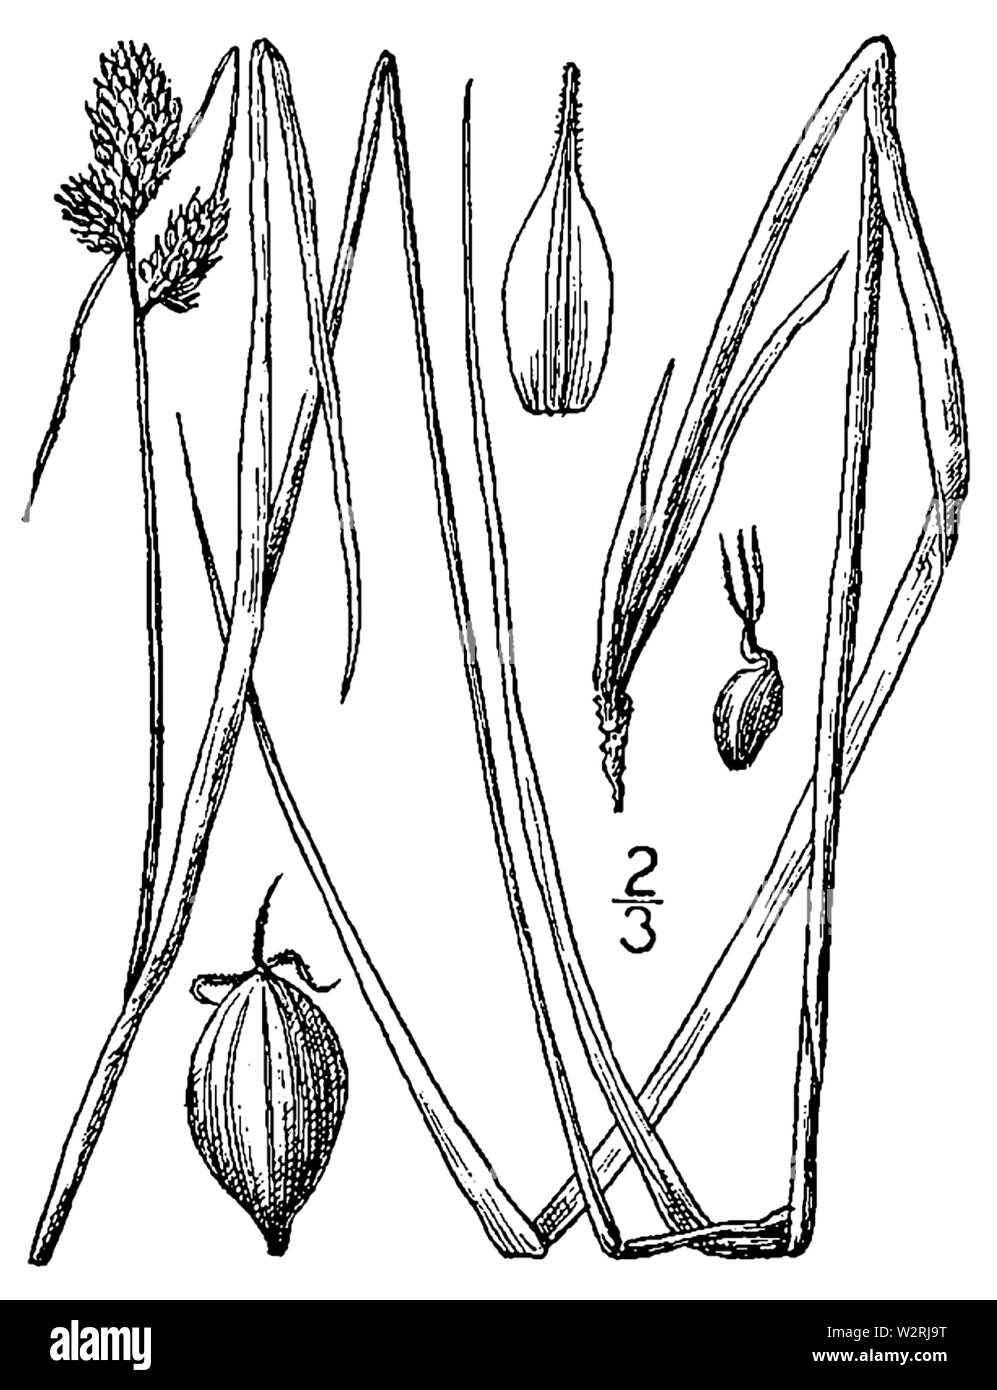 Carex bushii illustration Stock Photo